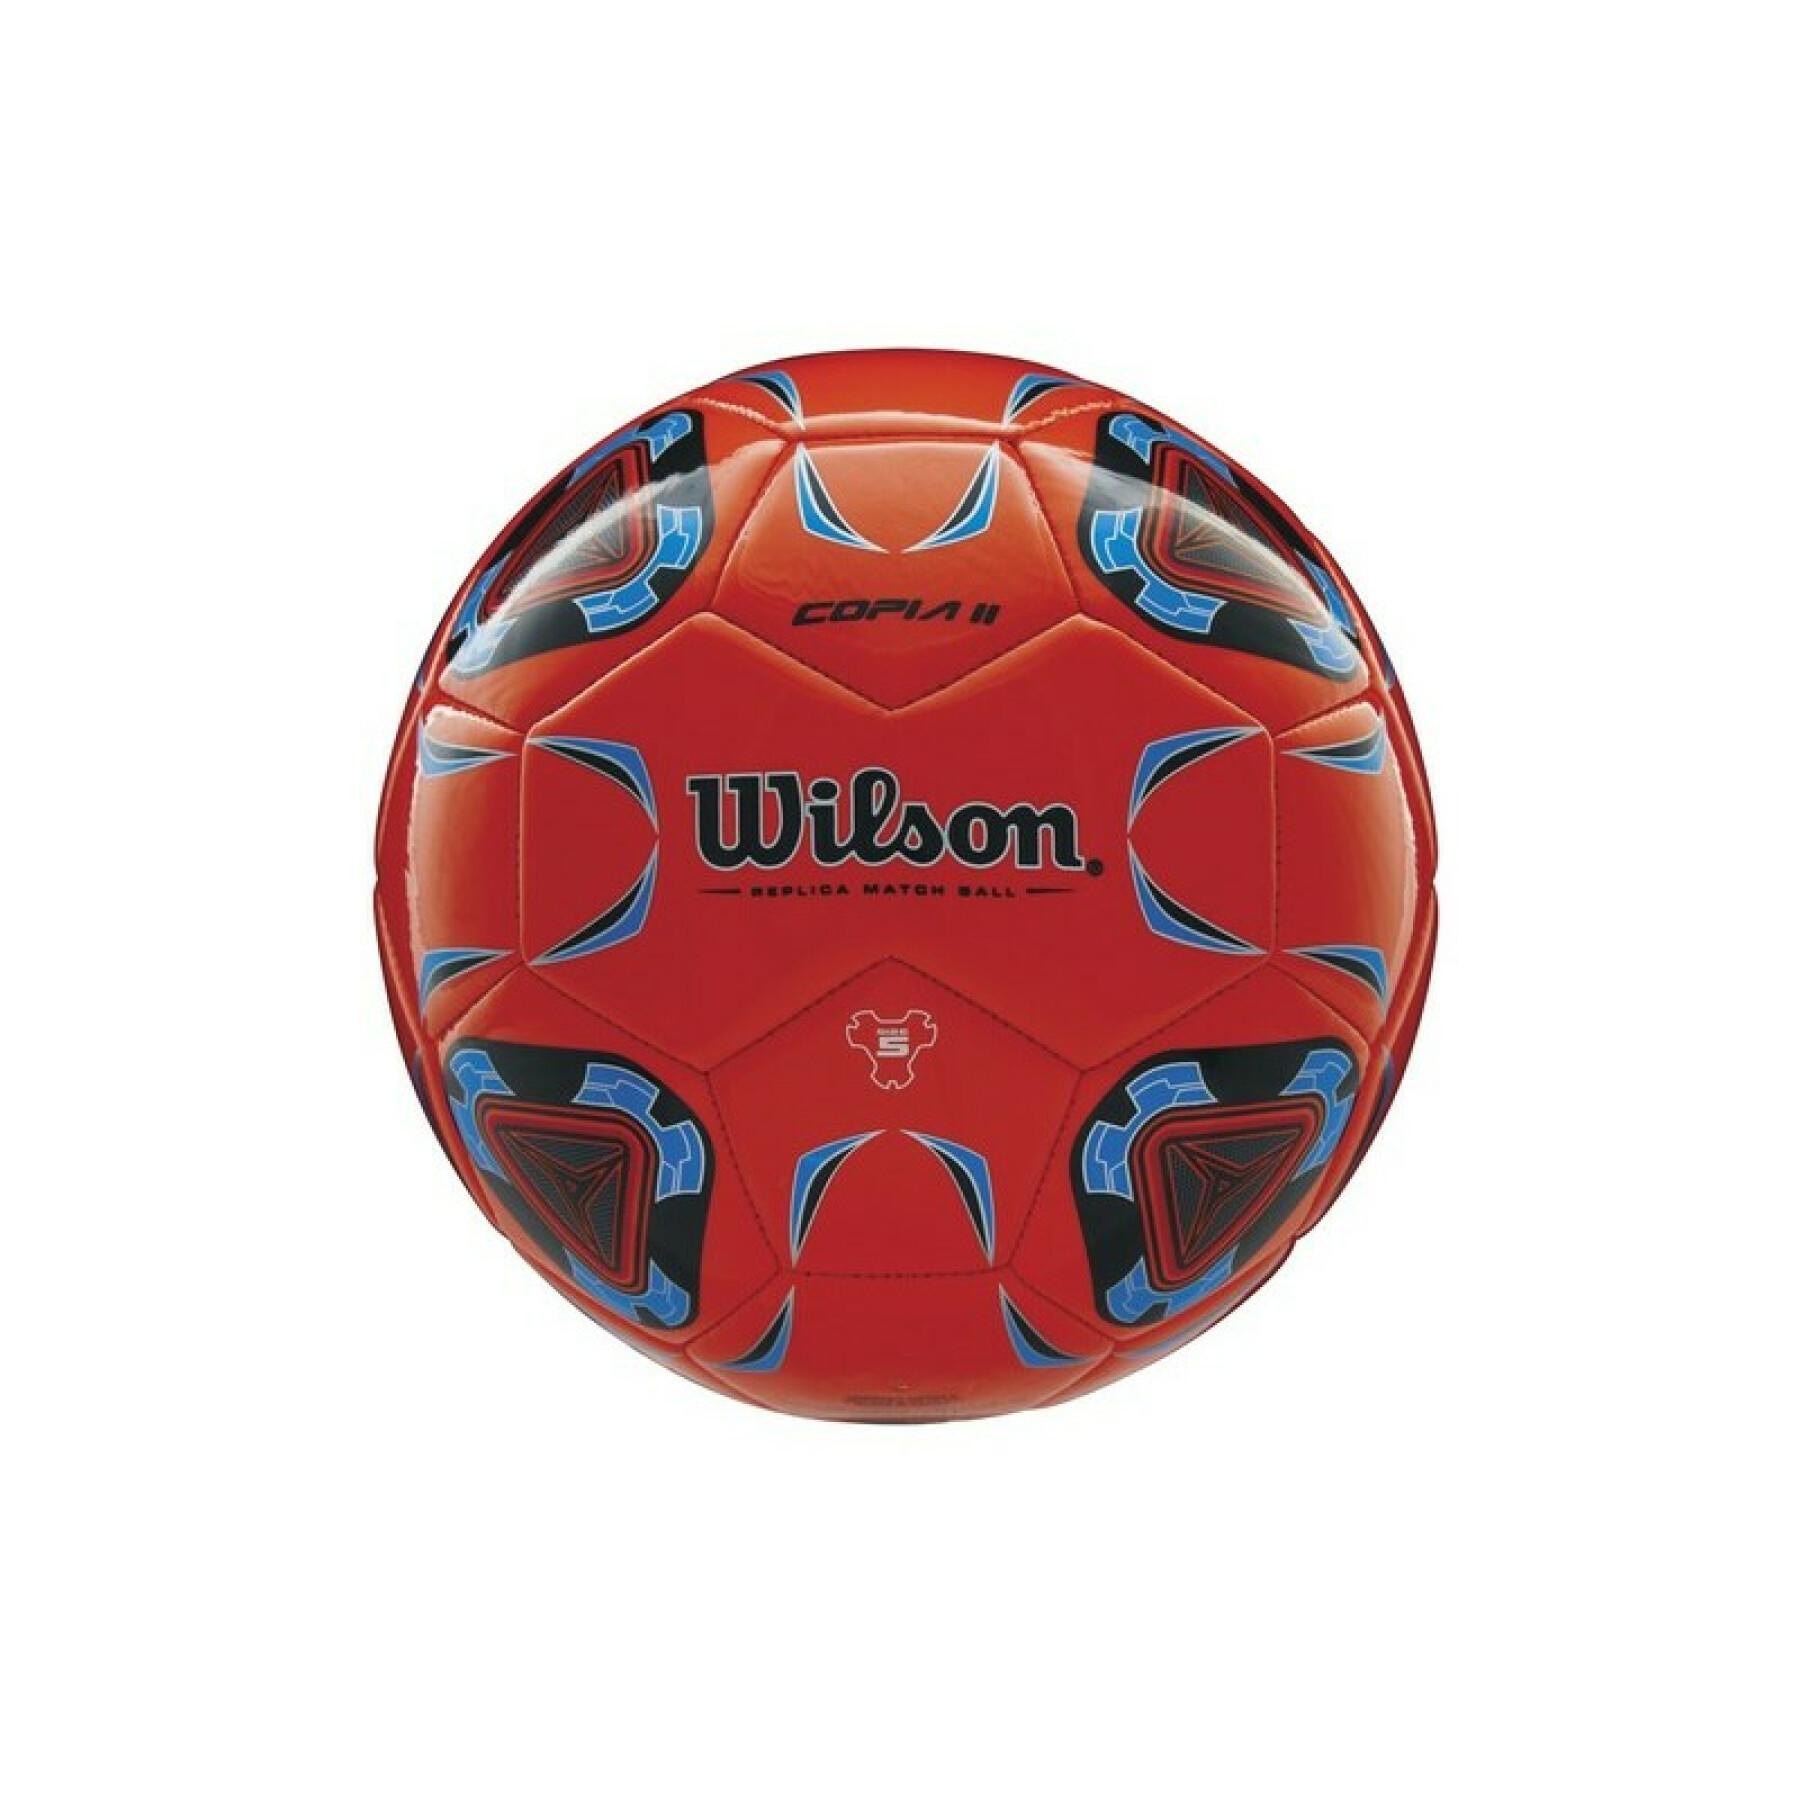 Ballong Wilson Copia II